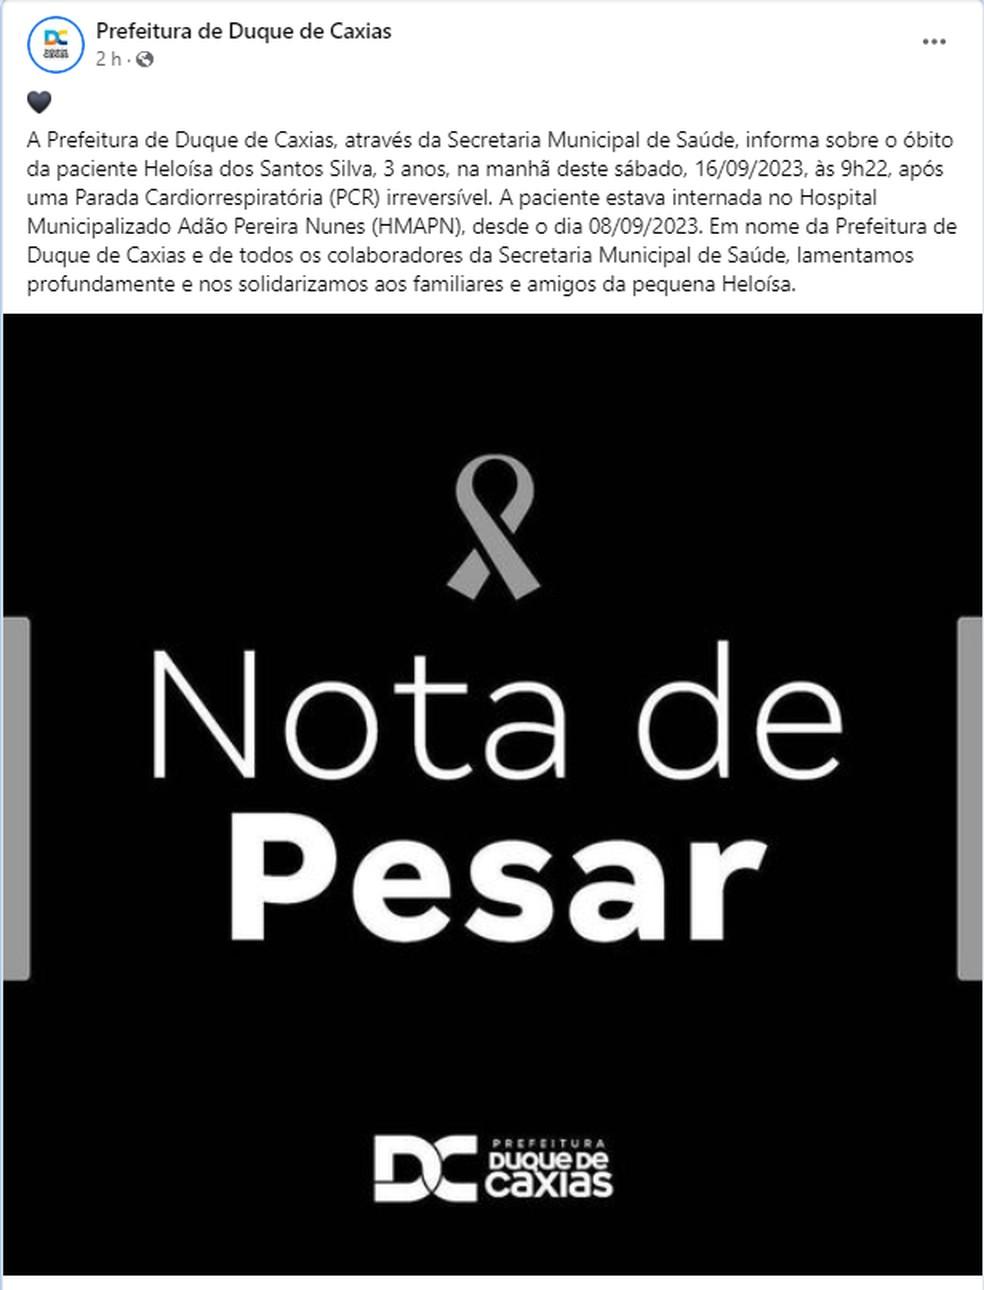 Prefeitura de Duque de Caxias publicou uma nota de pesar neste sbado Foto Reproduo Facebook